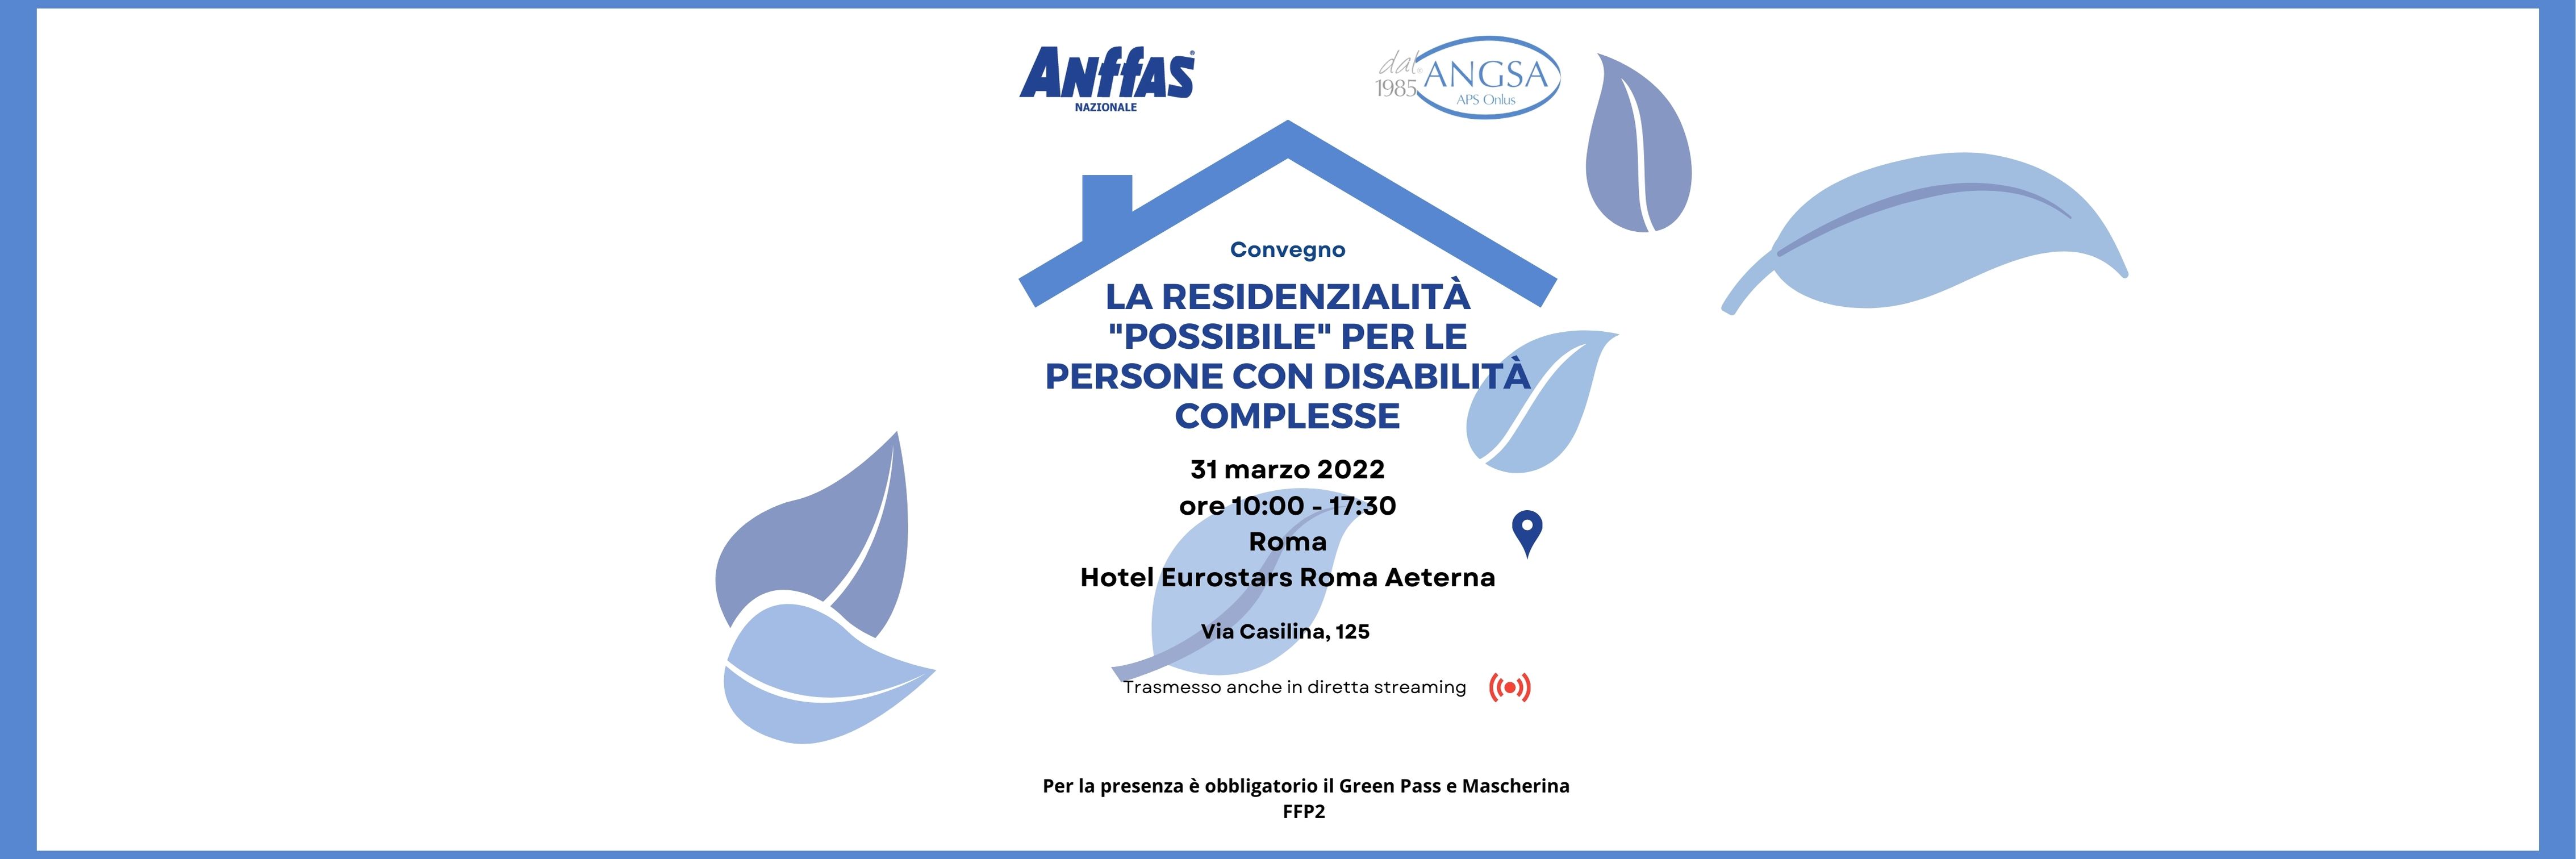 Convegno 31 marzo 2022 - La residenzialità “possibile” delle persone con disabilità complesse: Sinergia Anffas-Angsa